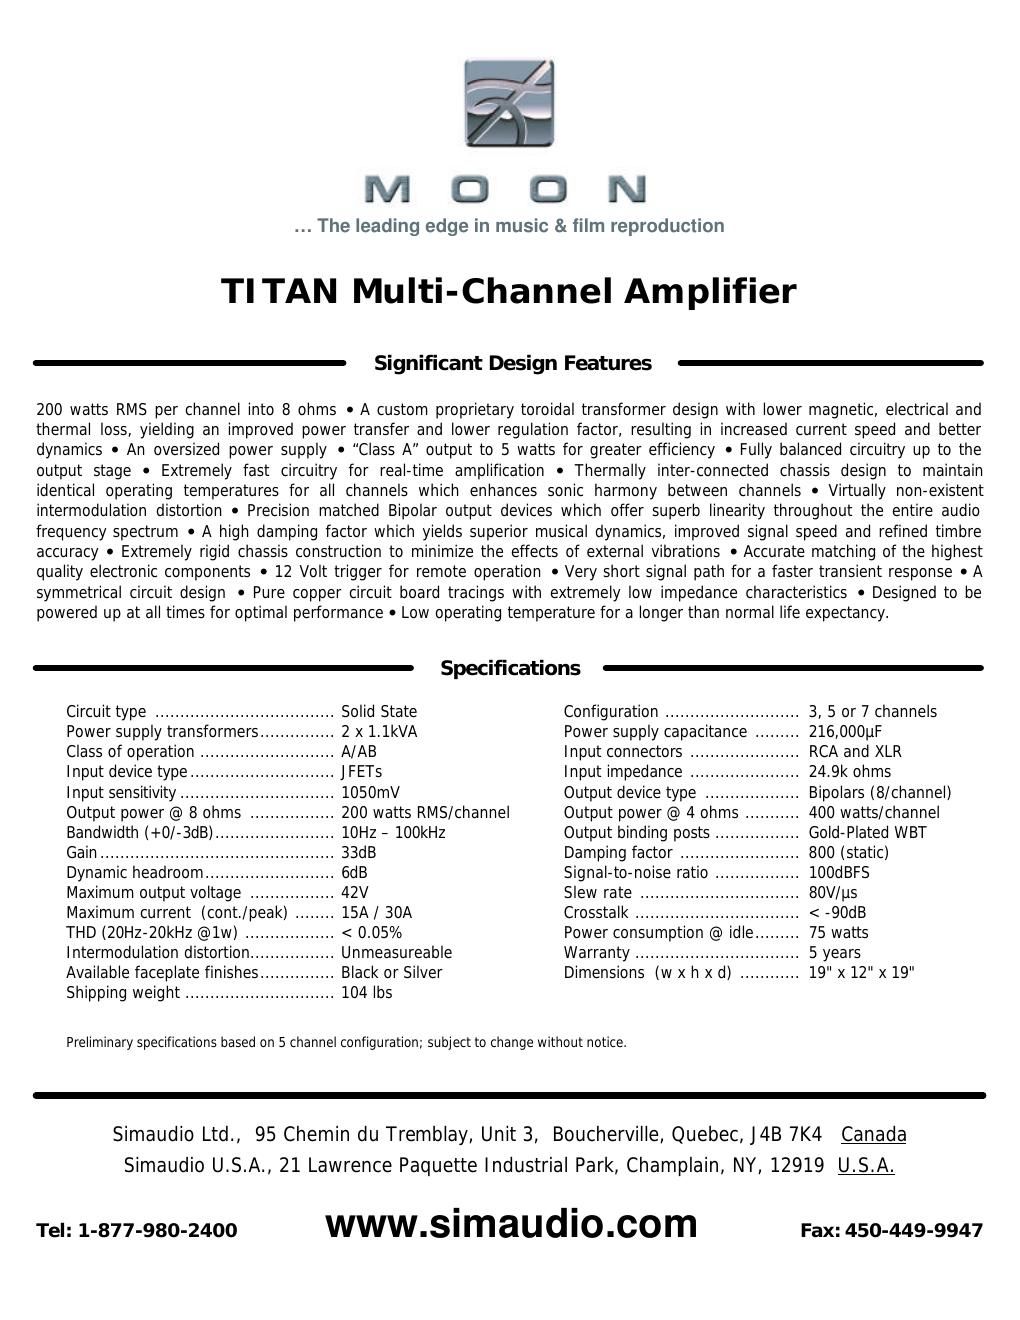 moon titan brochure